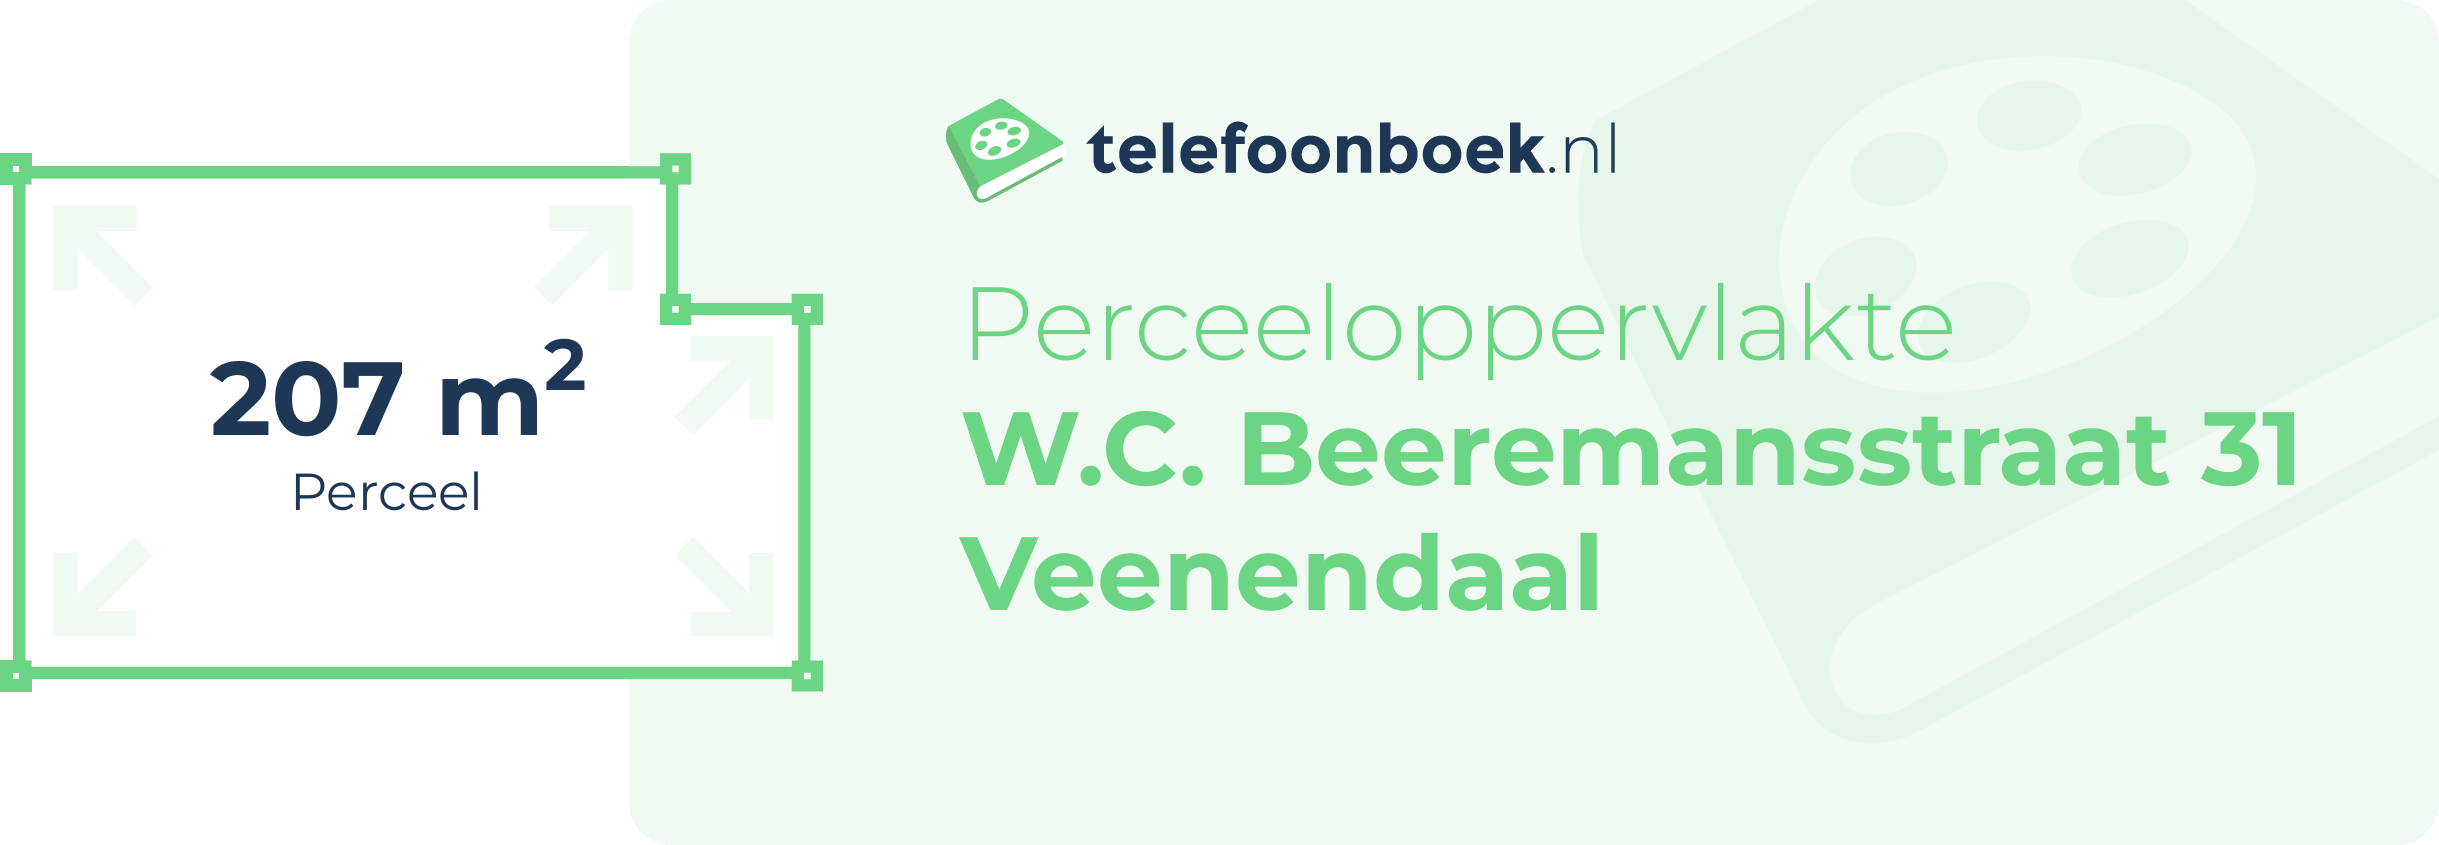 Perceeloppervlakte W.C. Beeremansstraat 31 Veenendaal